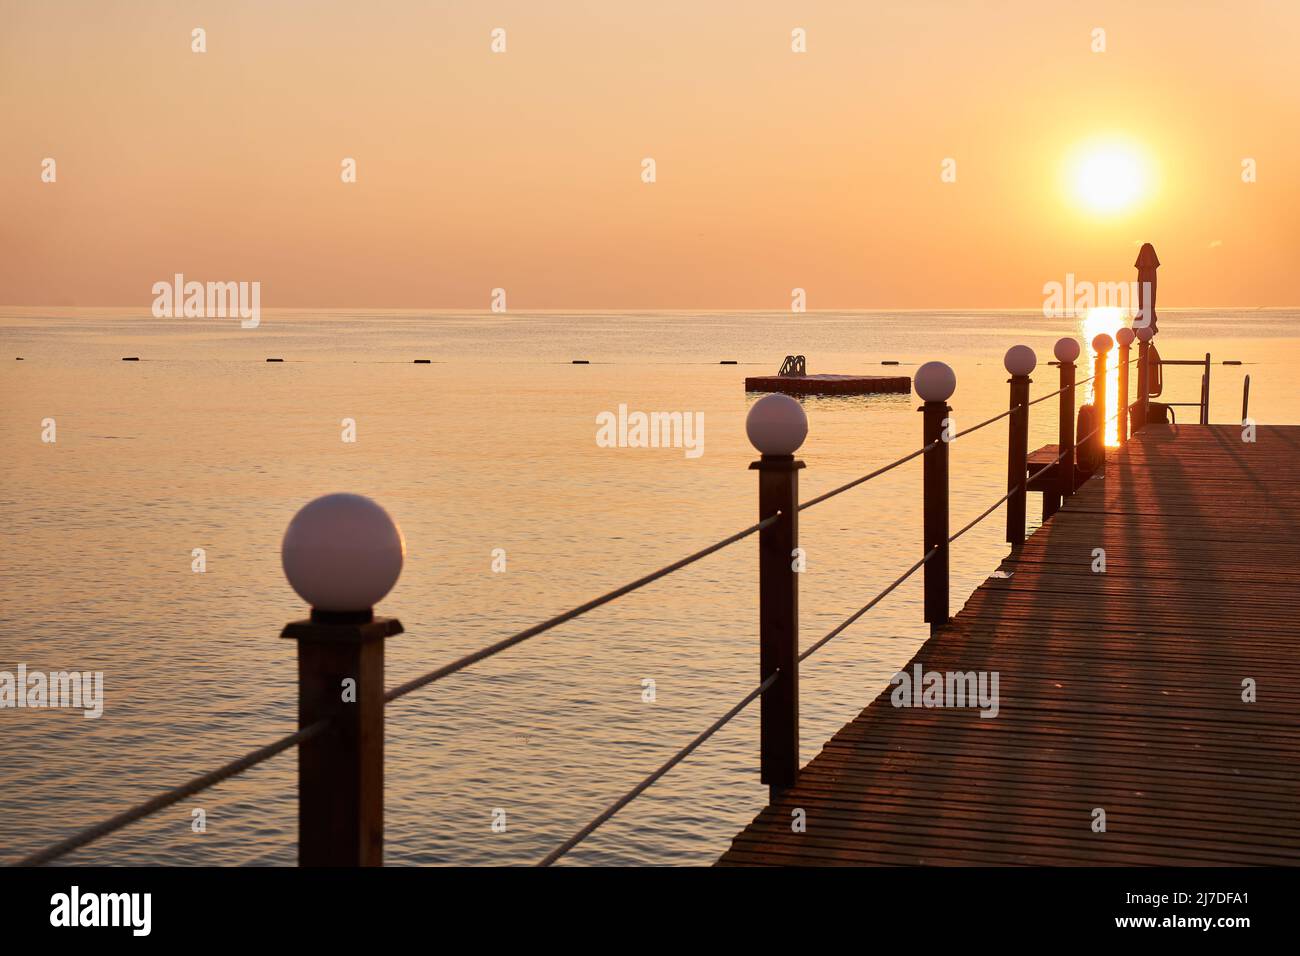 Muelle de madera en la playa sobre el fondo del cielo naranja y el sol naciente Foto de stock